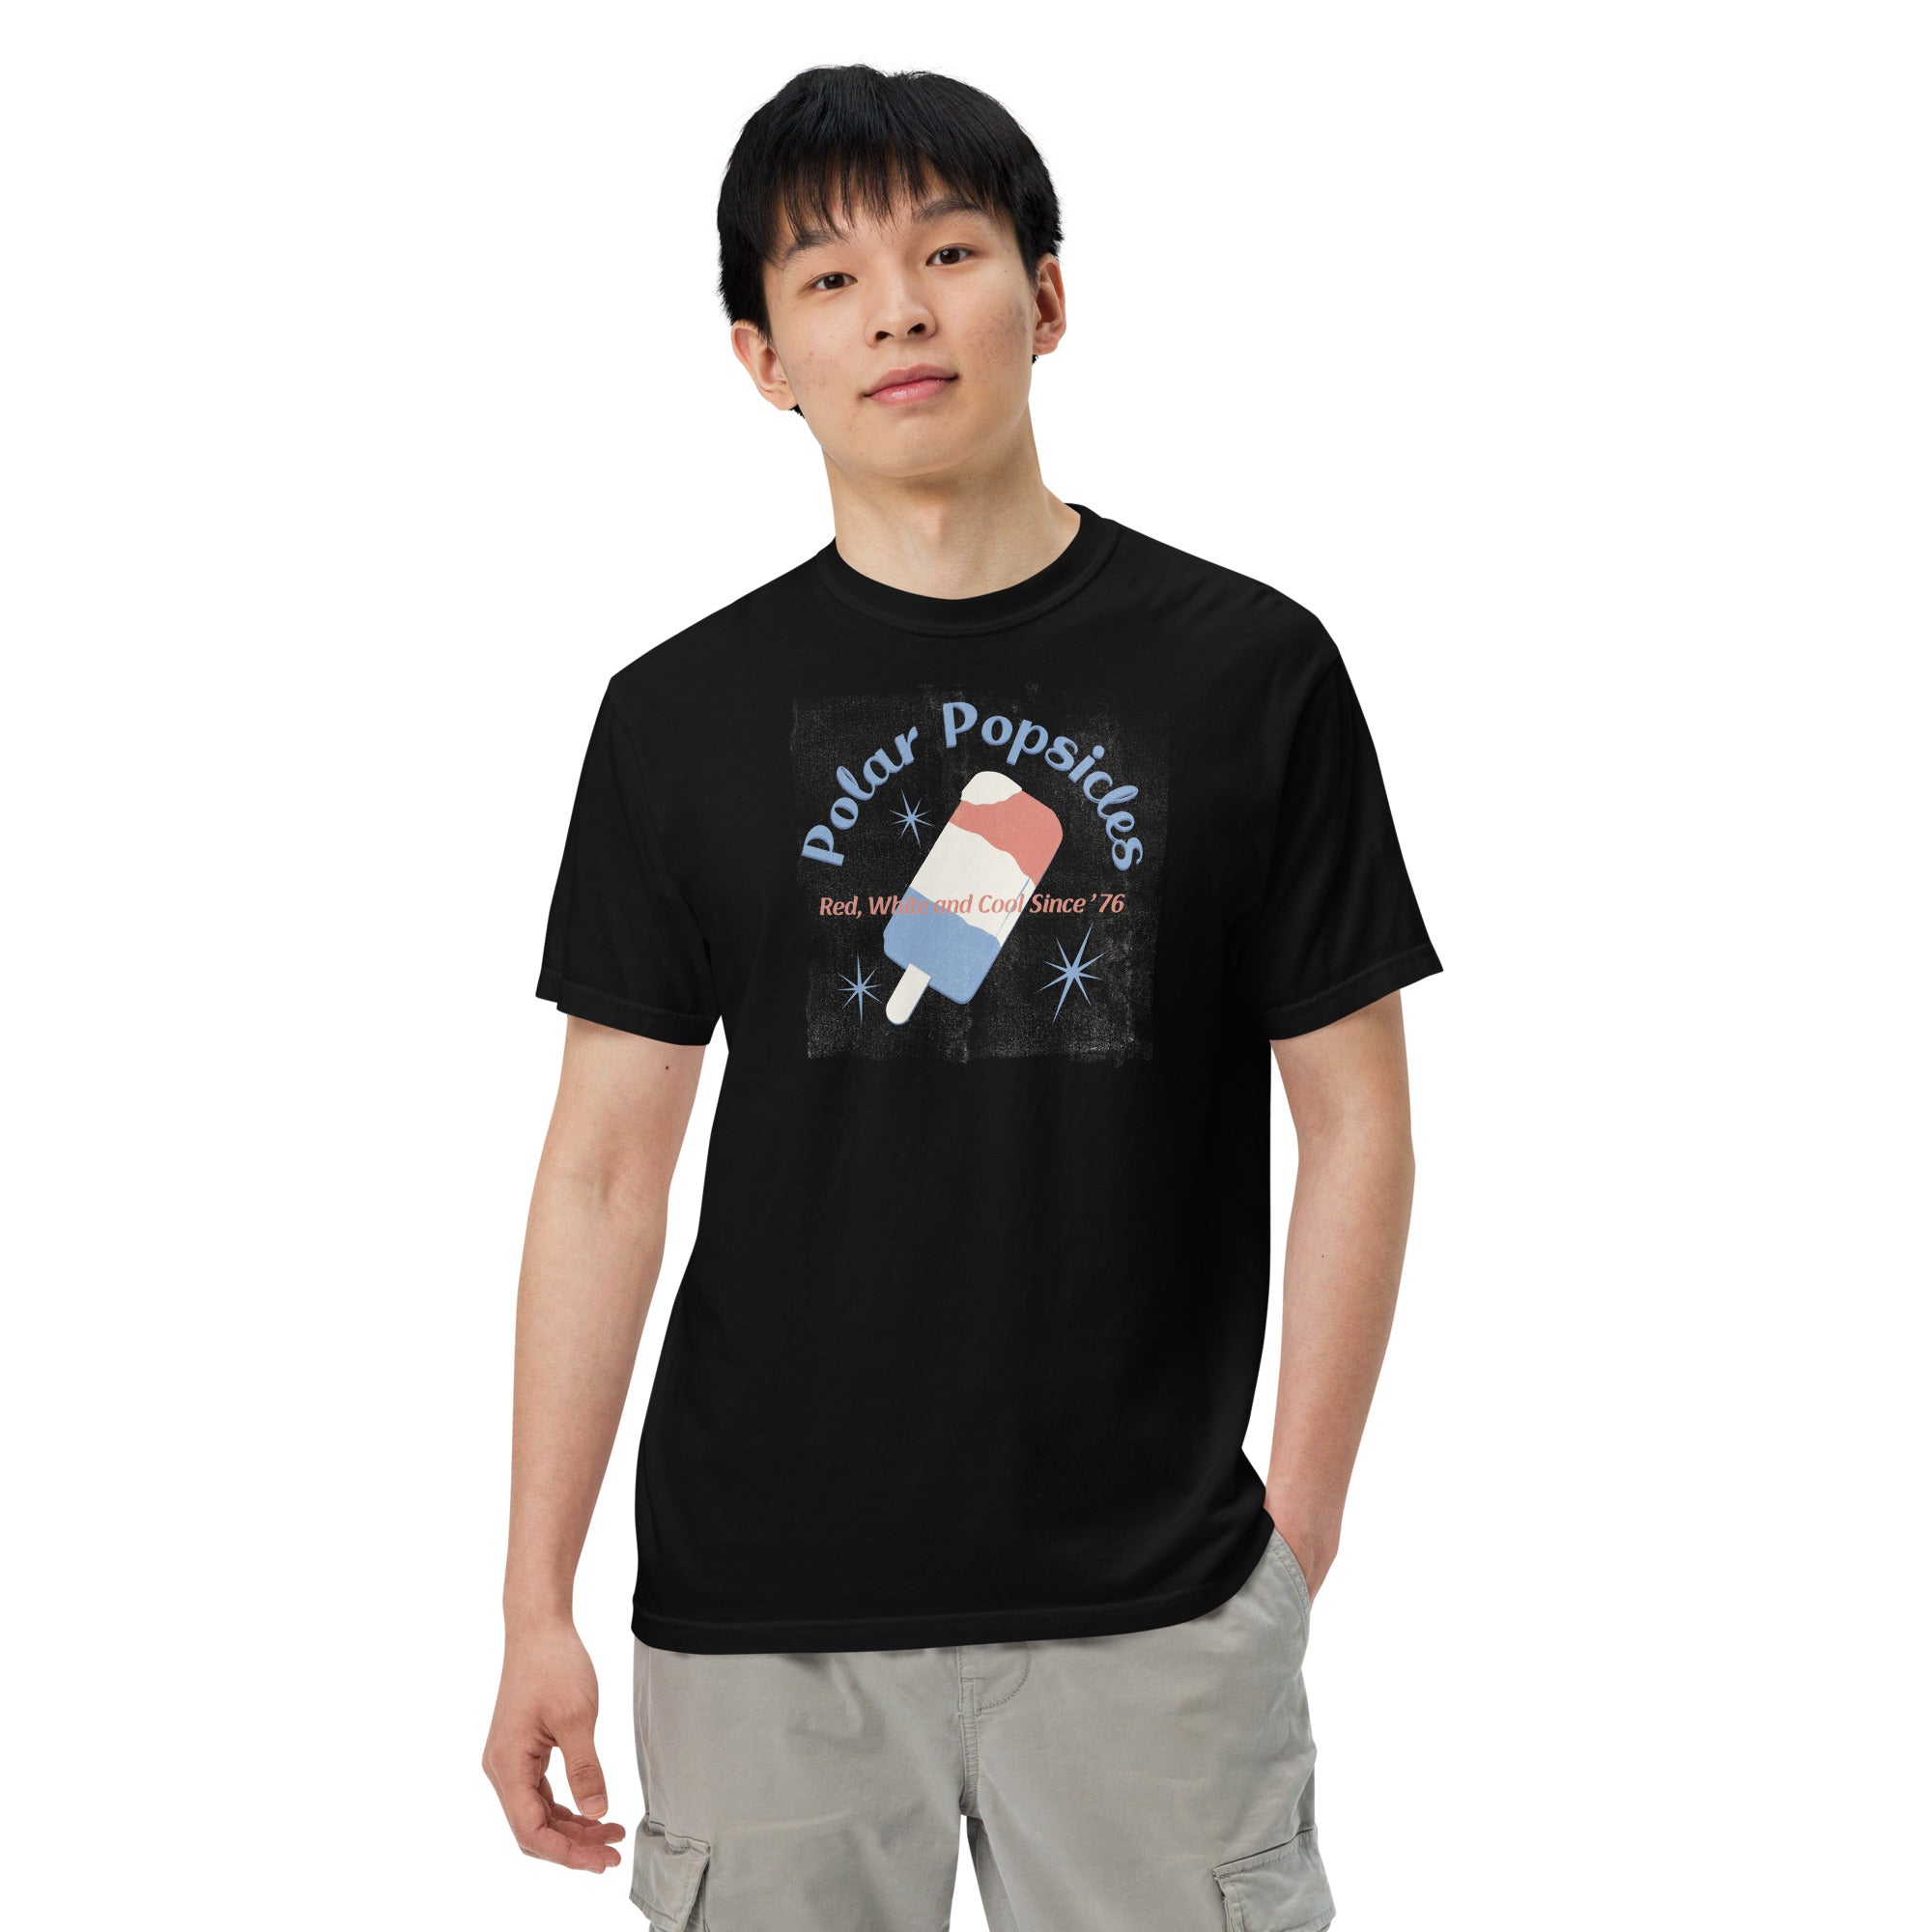 Men’s garment-dyed heavyweight t-shirt